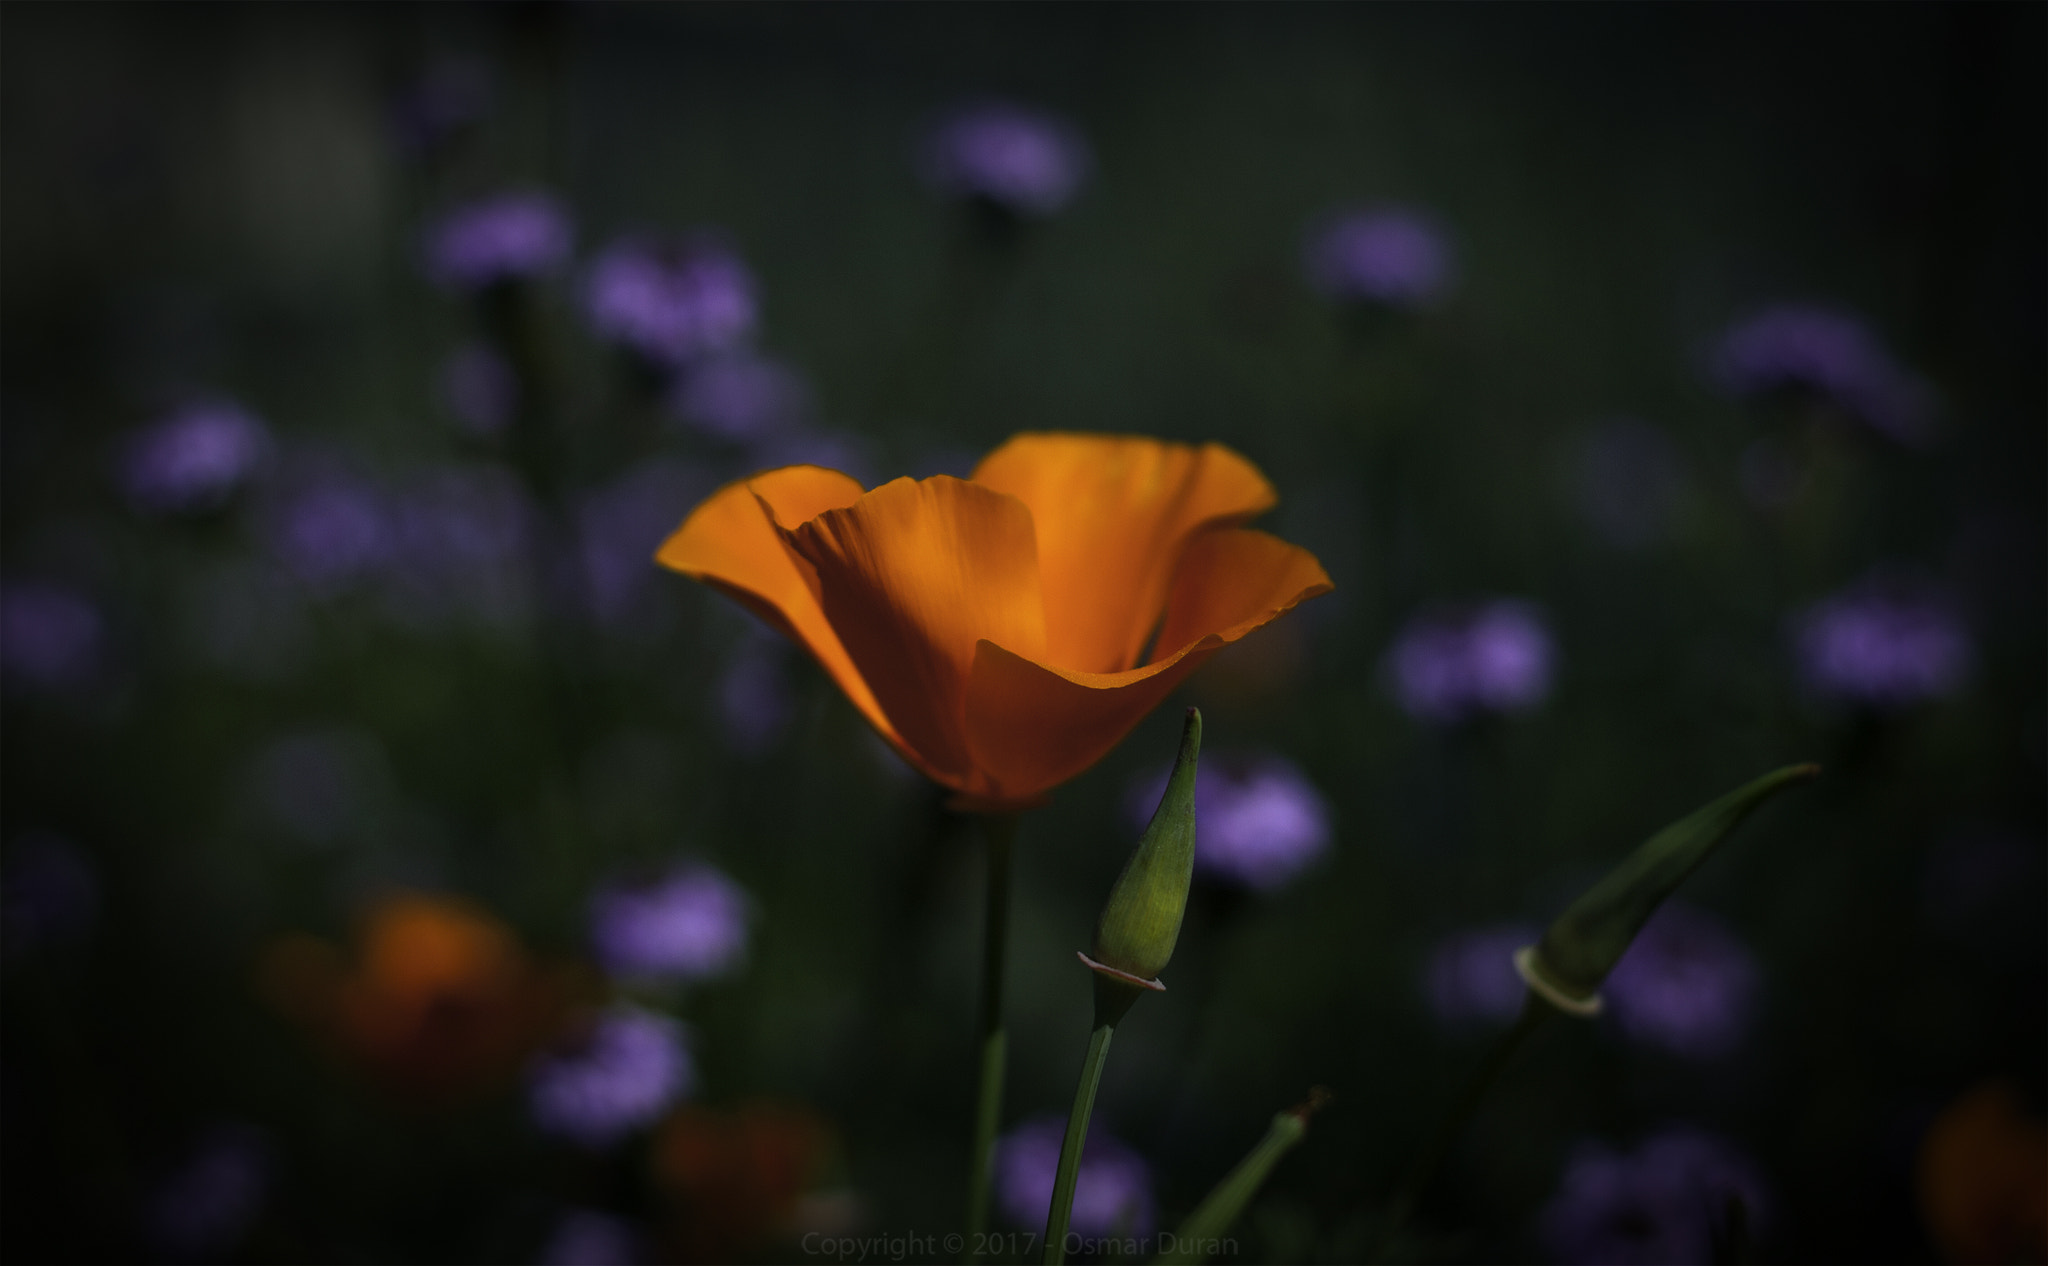 Nikon D200 sample photo. California poppy (eschscholzia californica) photography